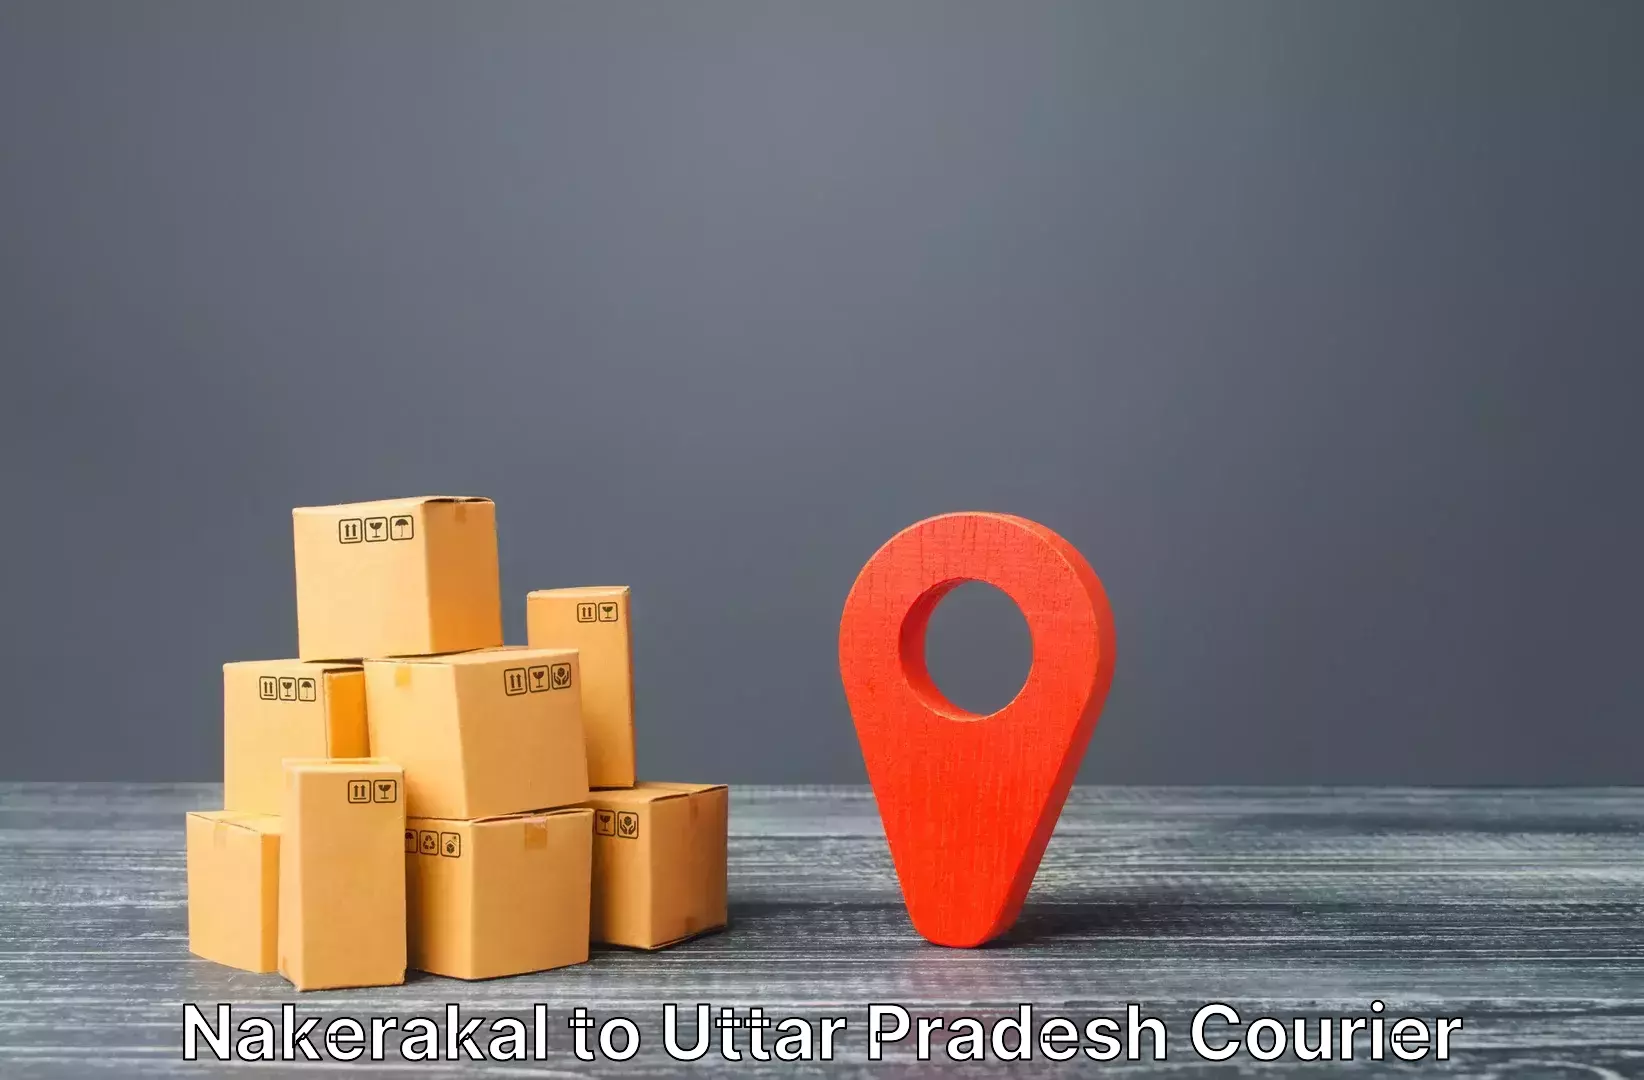 Baggage delivery estimate Nakerakal to Uttar Pradesh